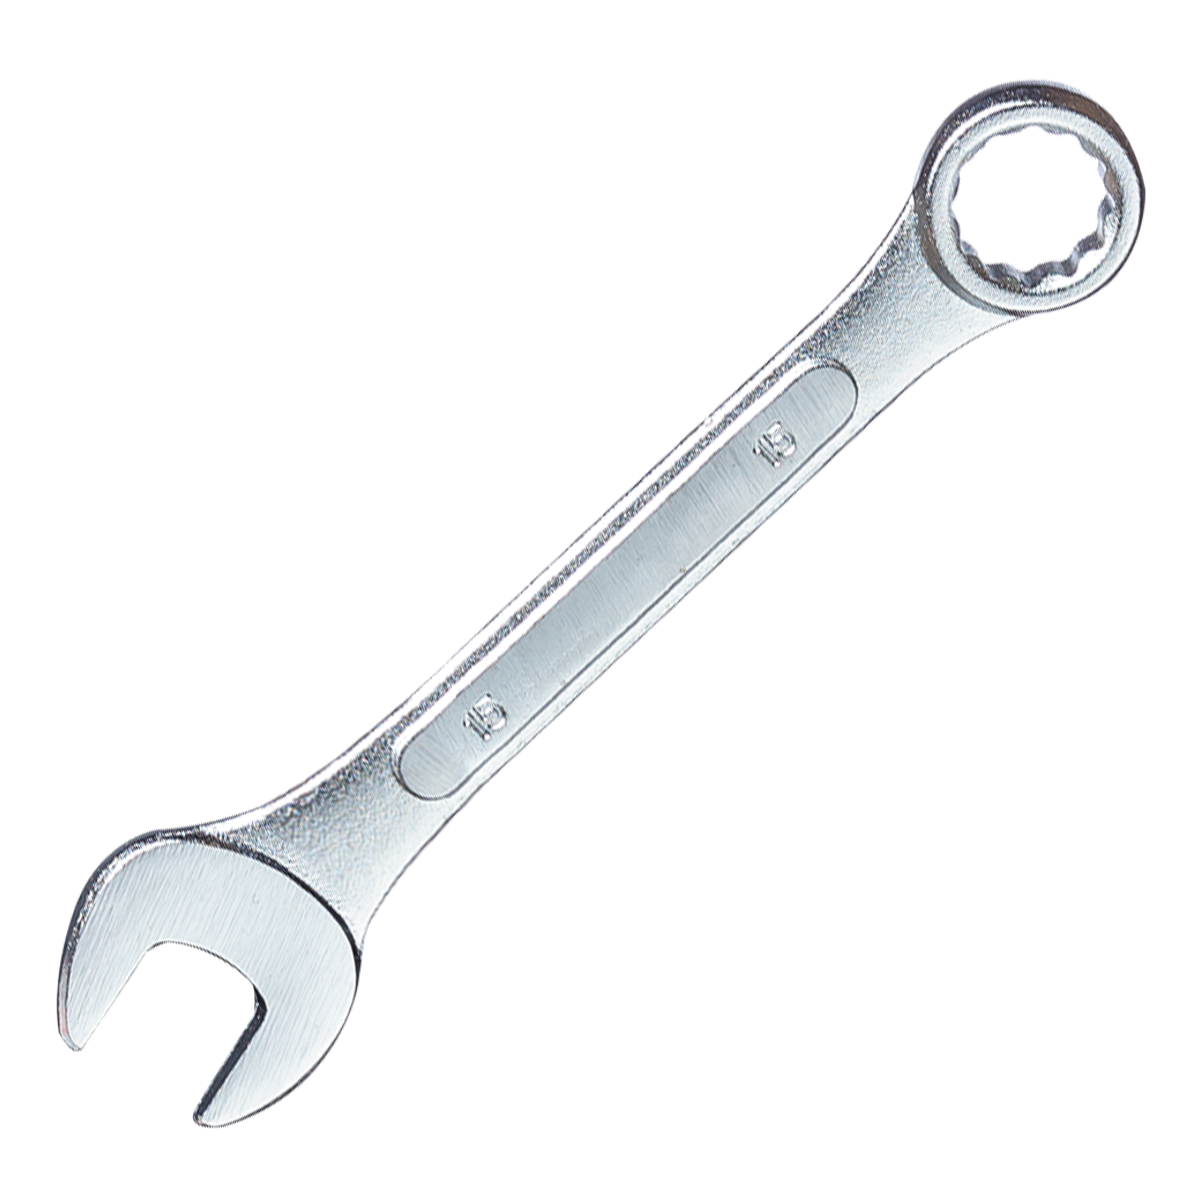 Ключ гаечный комбинированный, 19 мм ZIPOWER COMBINATION SPANNER 19 mm гаечный ключ сибин 27089 08 комбинированный 8 мм